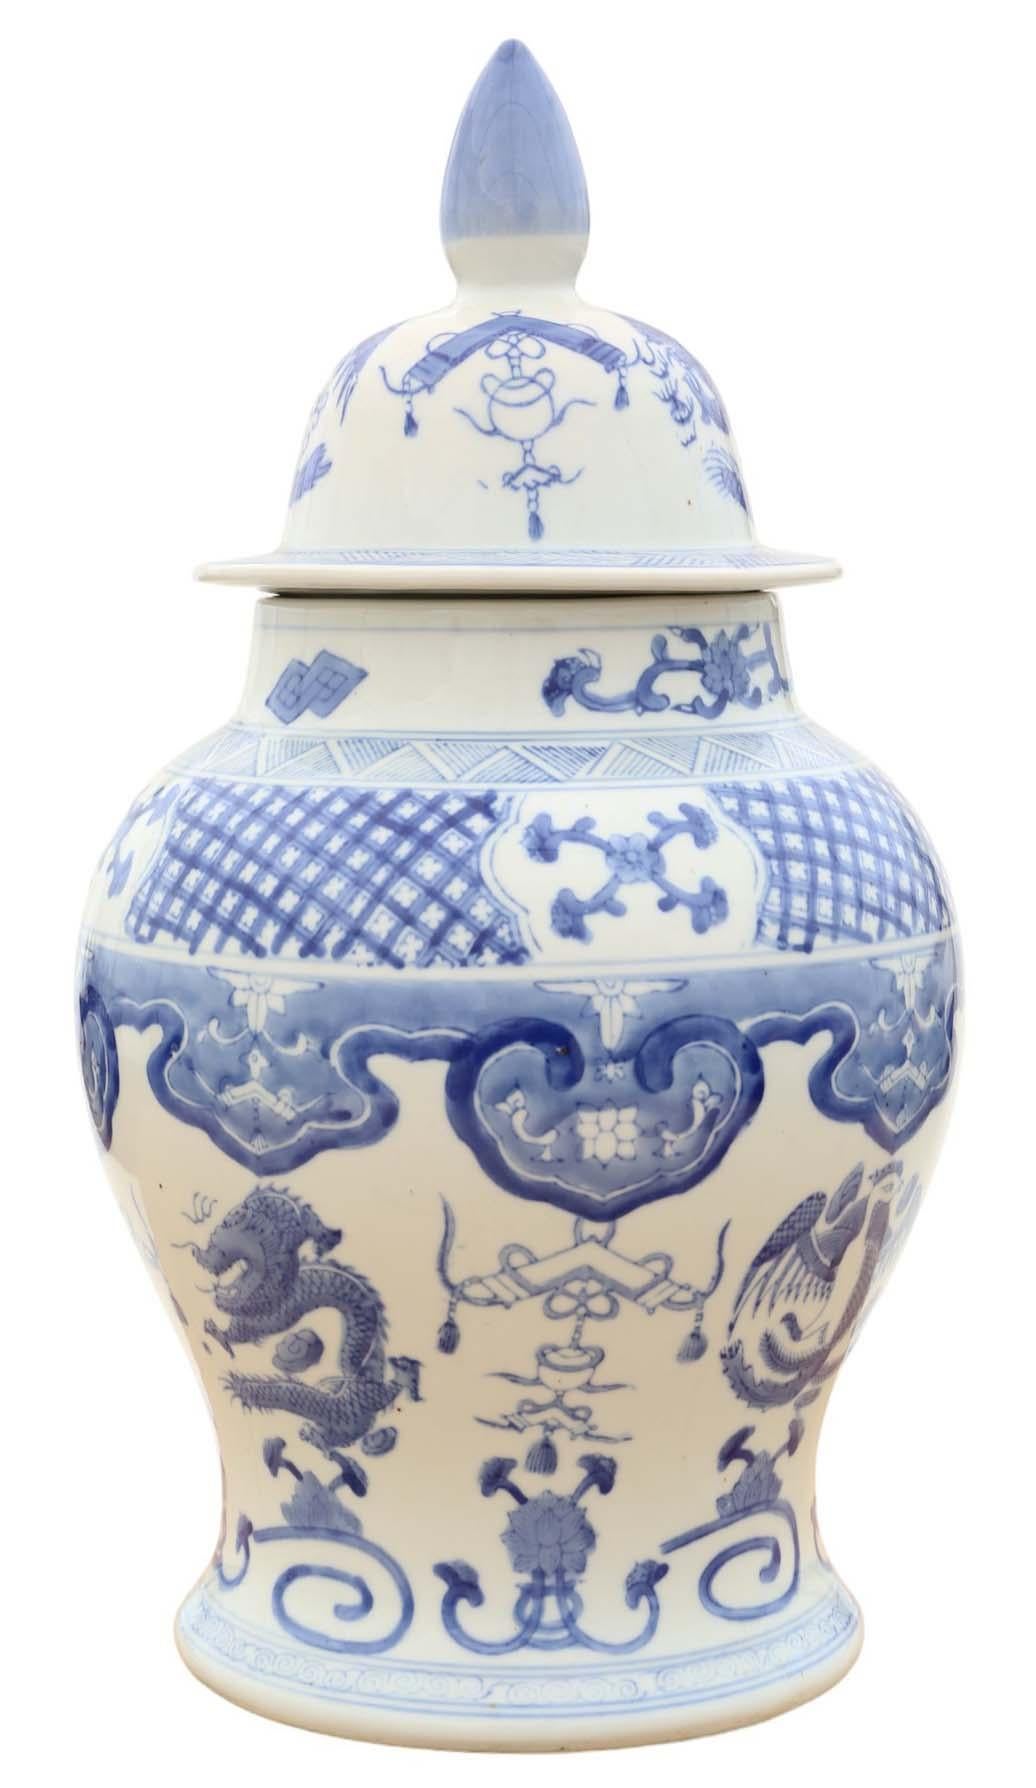 Antikes großes blau-weißes chinesisch-orientalisches Keramik-Ingwerglas mit Deckel, vermutlich aus dem frühen 20. Jahrhundert. Auf dem Sockel befindet sich eine 4-stellige Marke.

Dieses Stück ist außerordentlich dekorativ und würde jedes geeignete